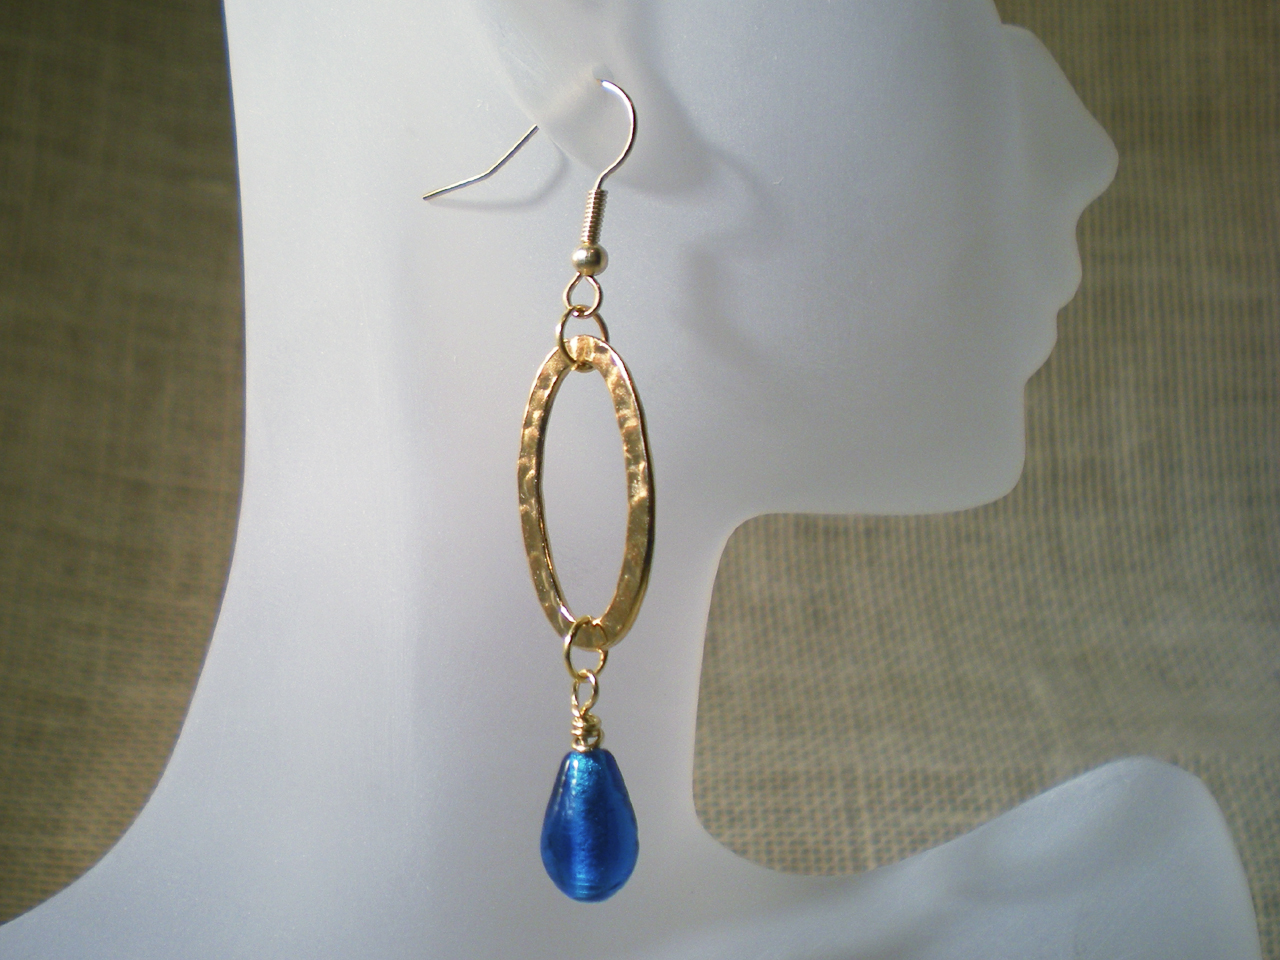 gold-oval-blue-teardrop-earrings-still-on-form